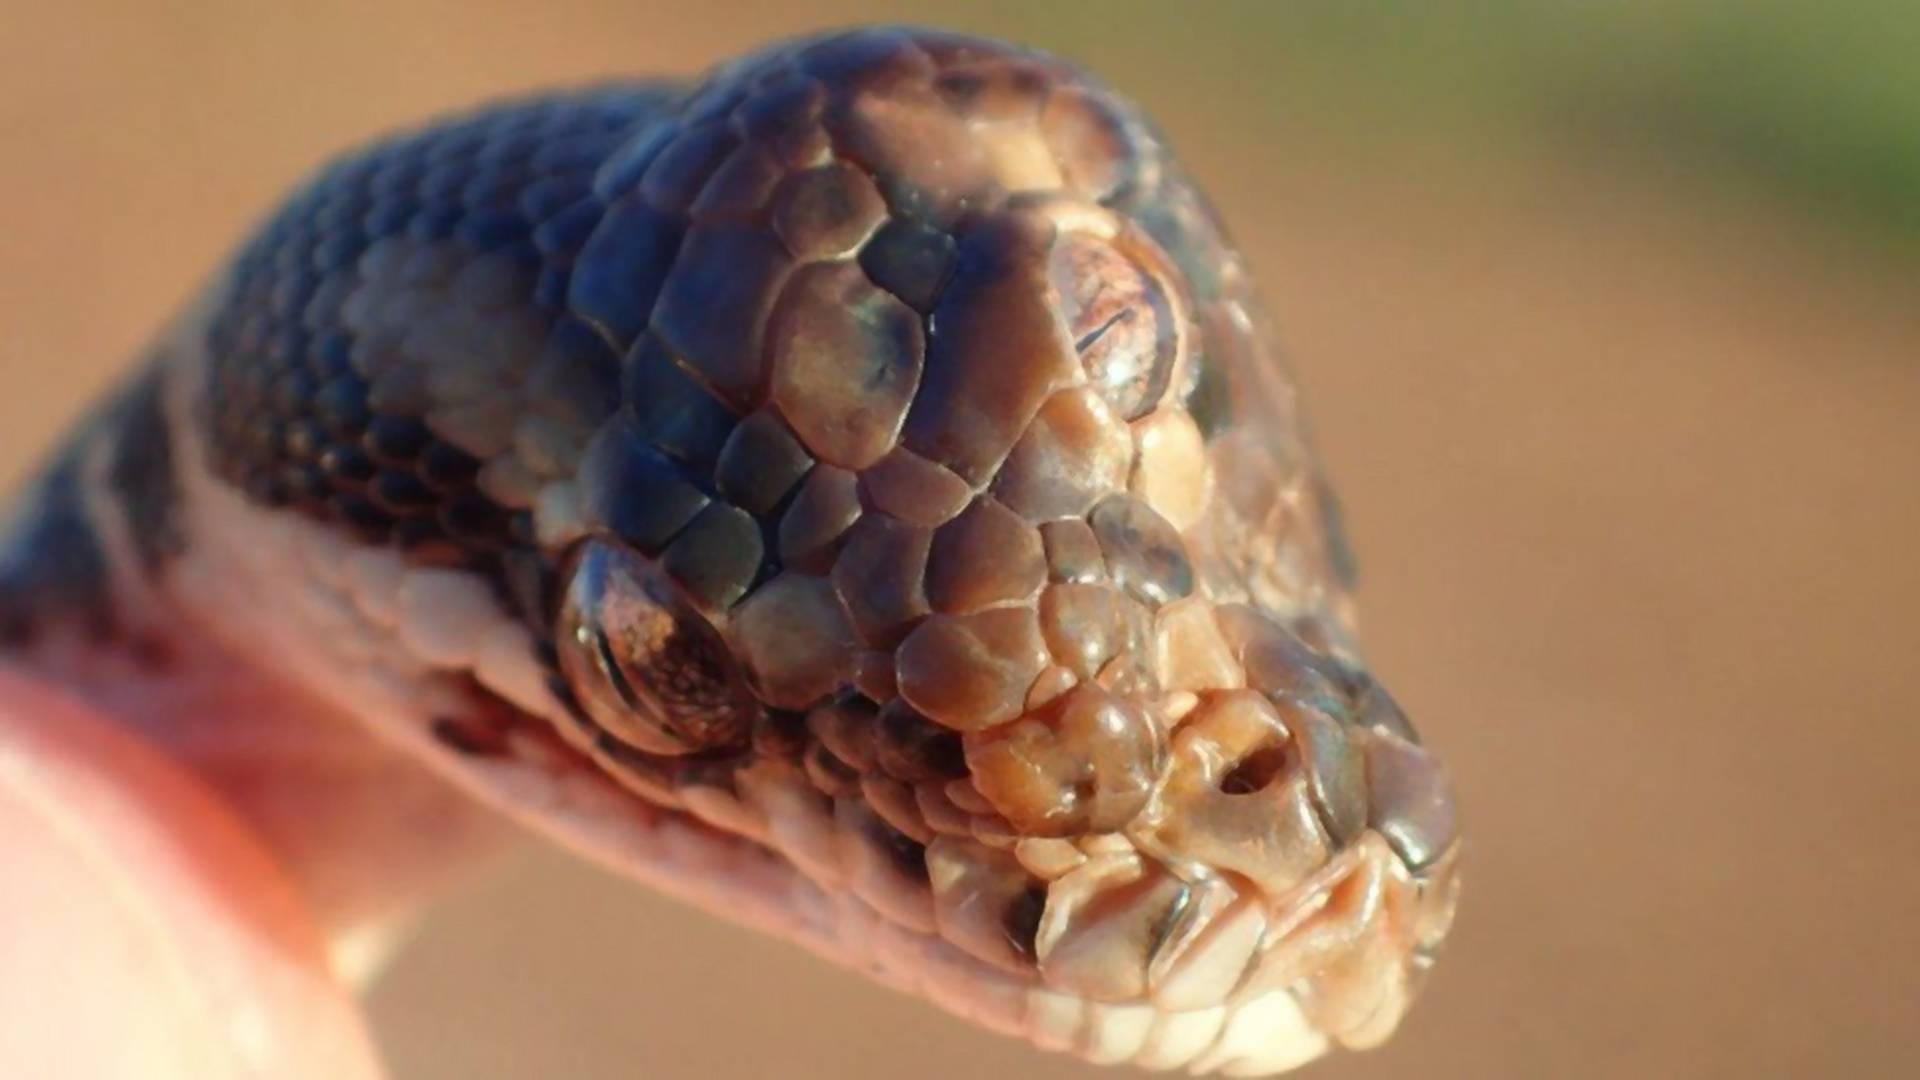 Háromszemű kígyót találtak egy autópályán